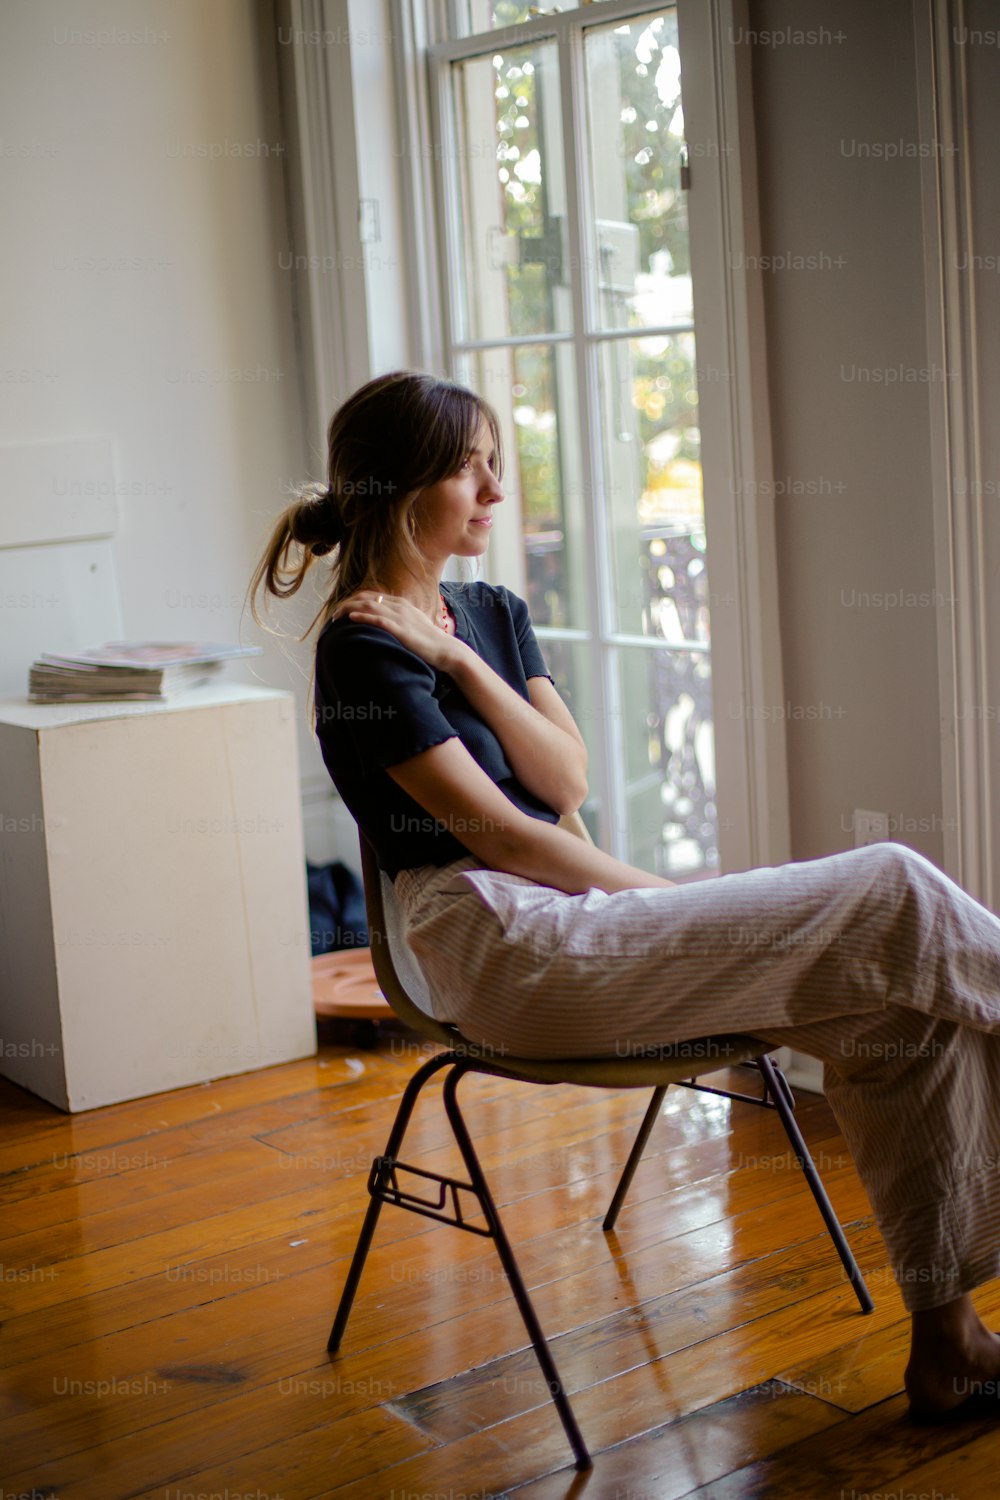 Una mujer sentada en una silla mirando por una ventana